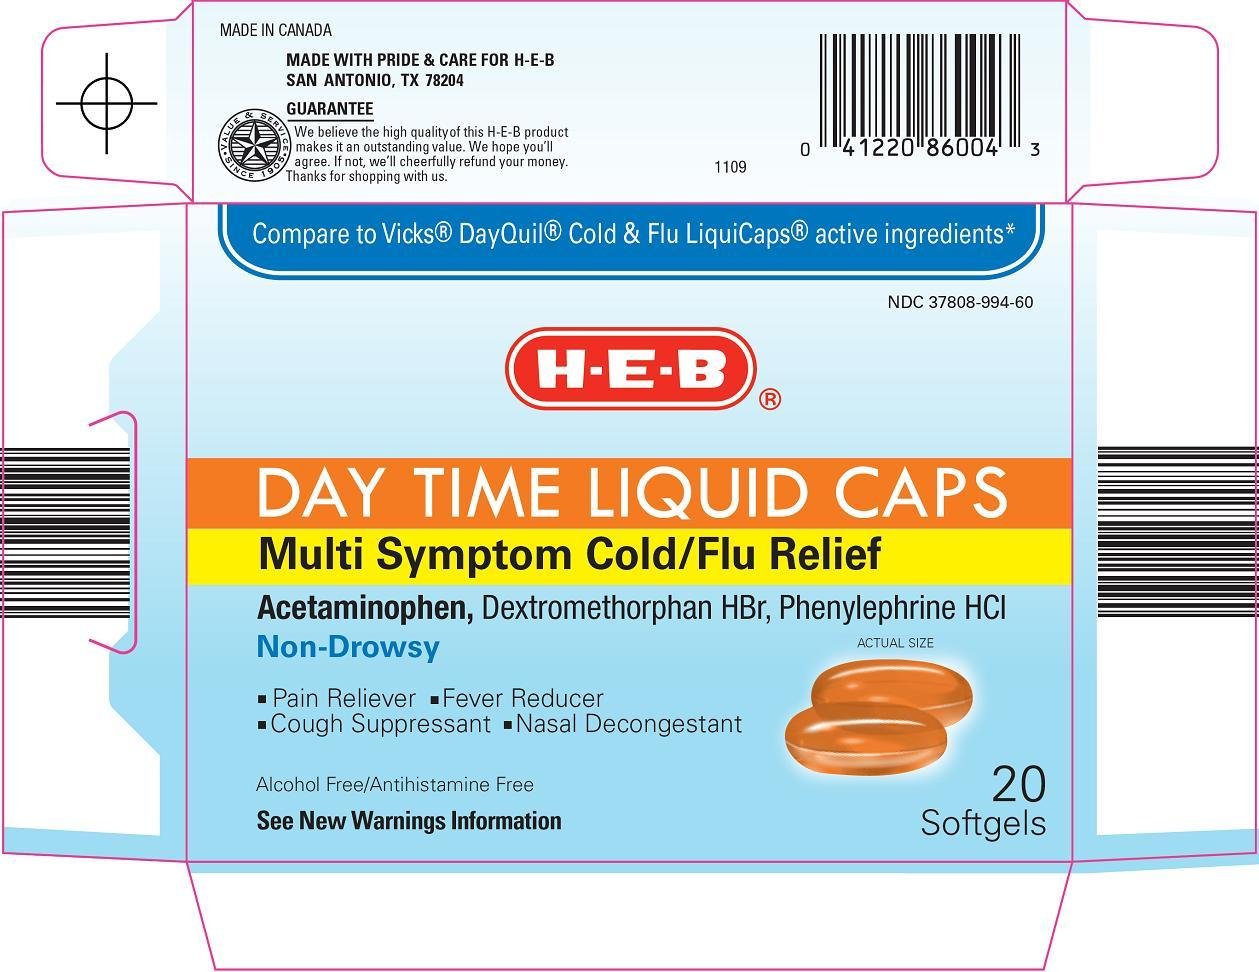 Day Time Liquid Caps Carton Image 1